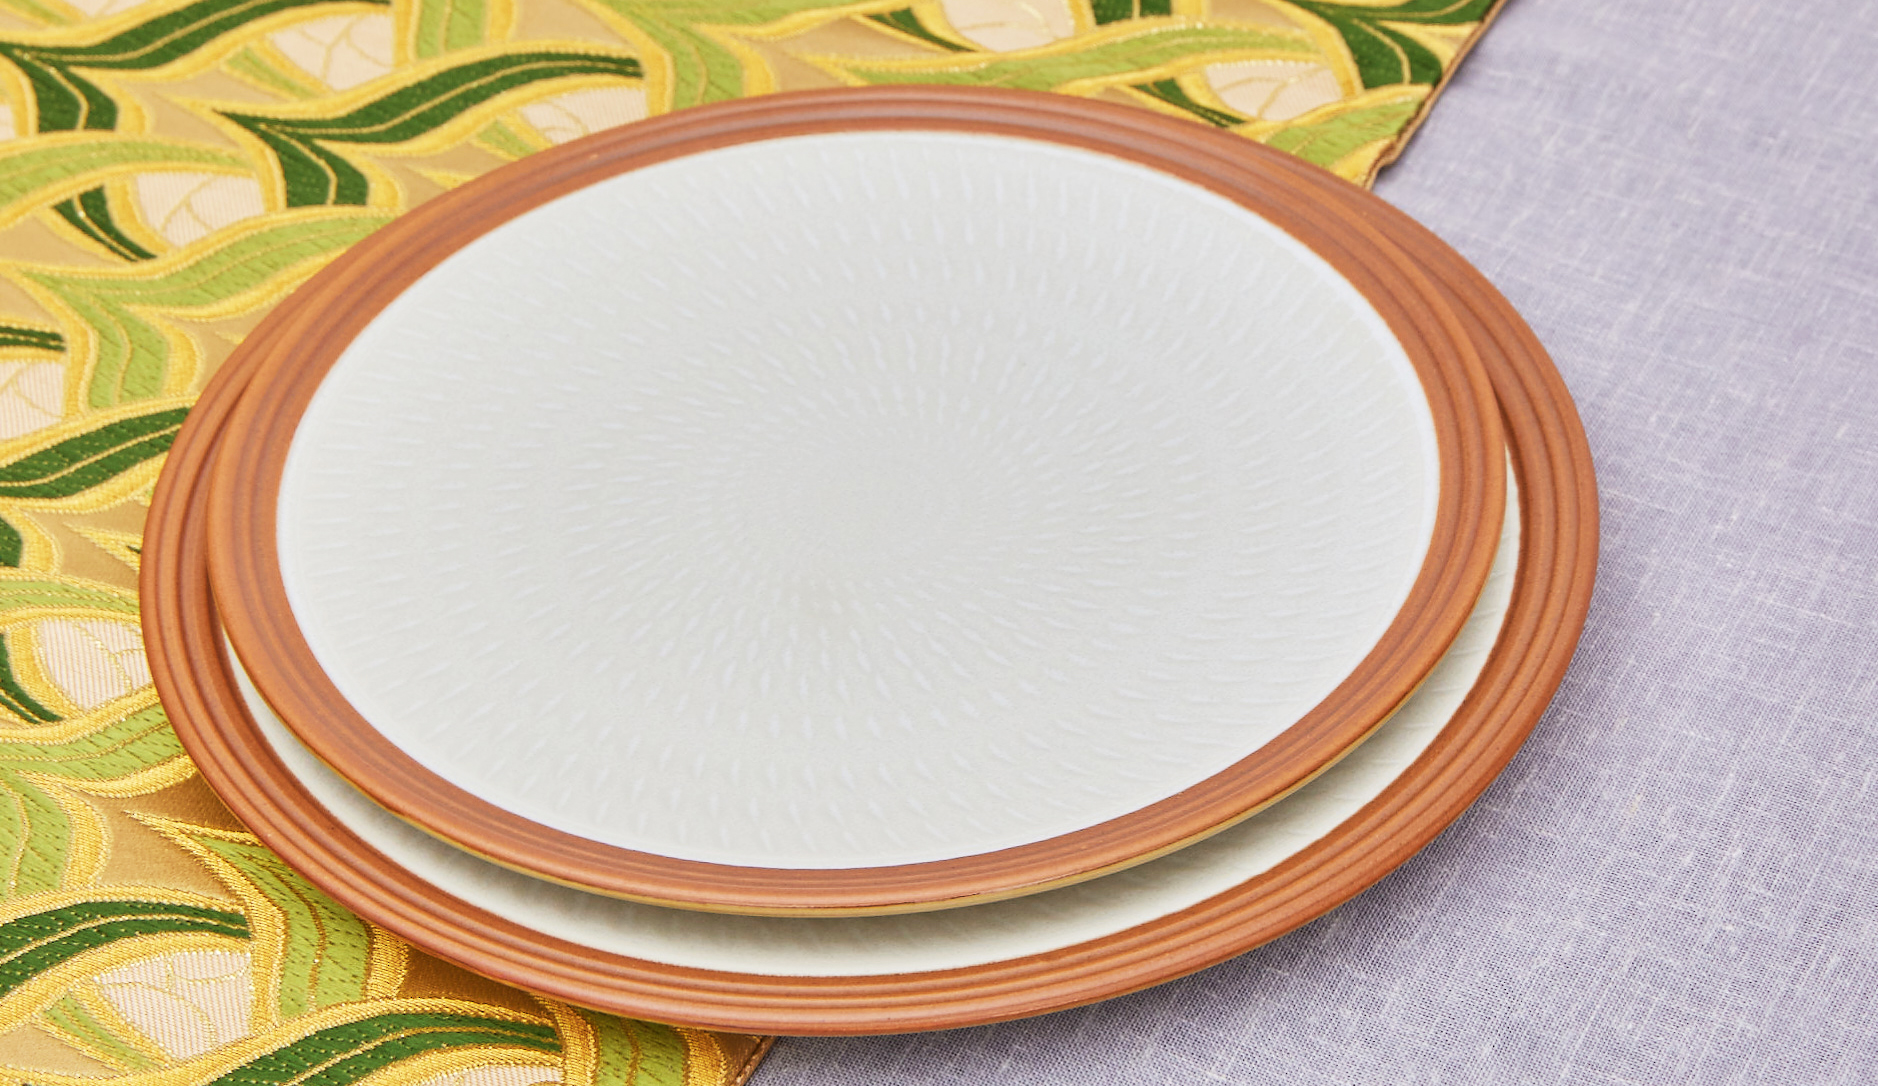 Table runner × White porcelain Plate